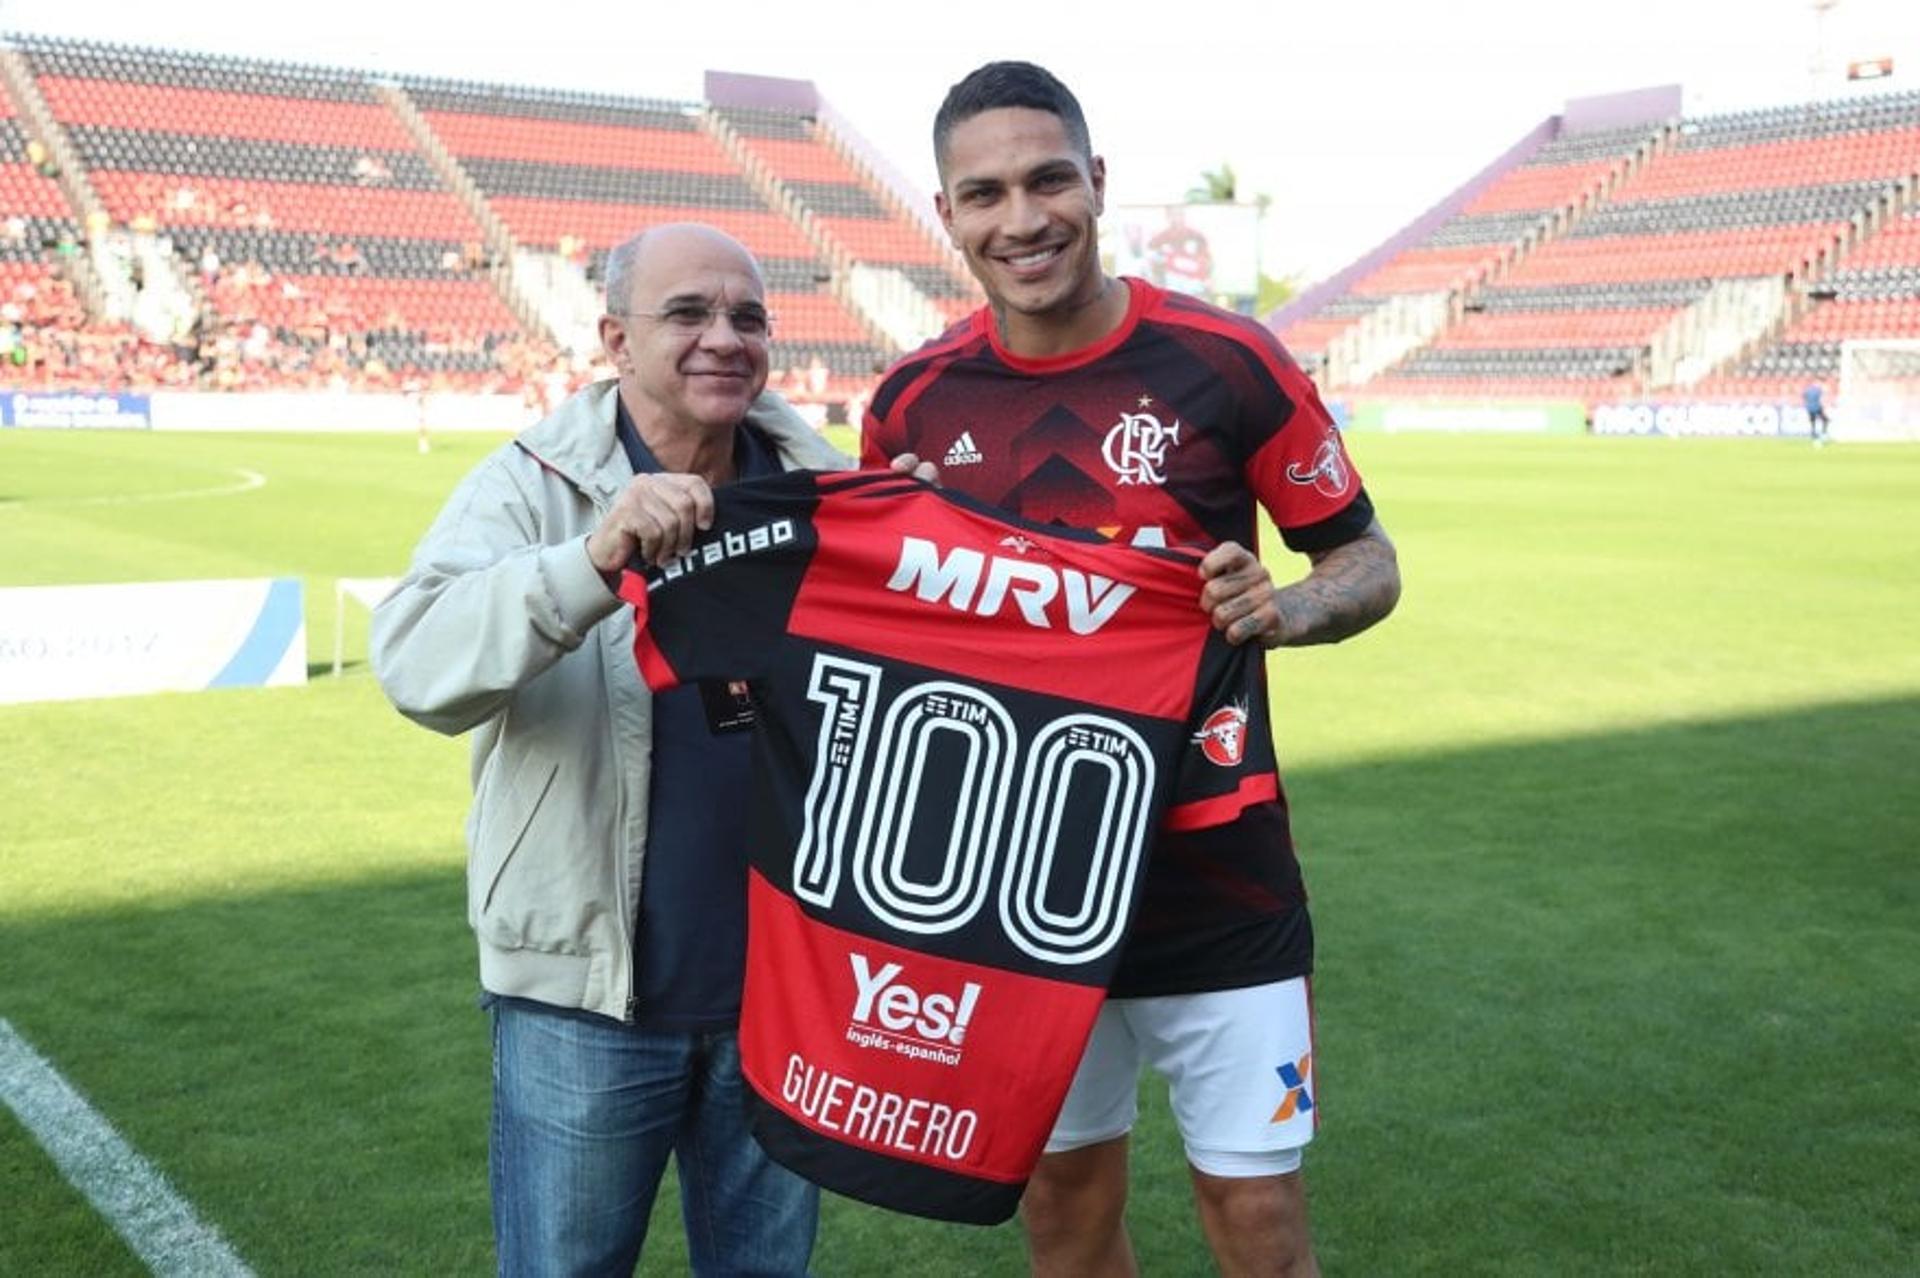 Guerrero completou 100 jogos pelo Flamengo e ganhou homenagem do clube contra o Atlético-PR